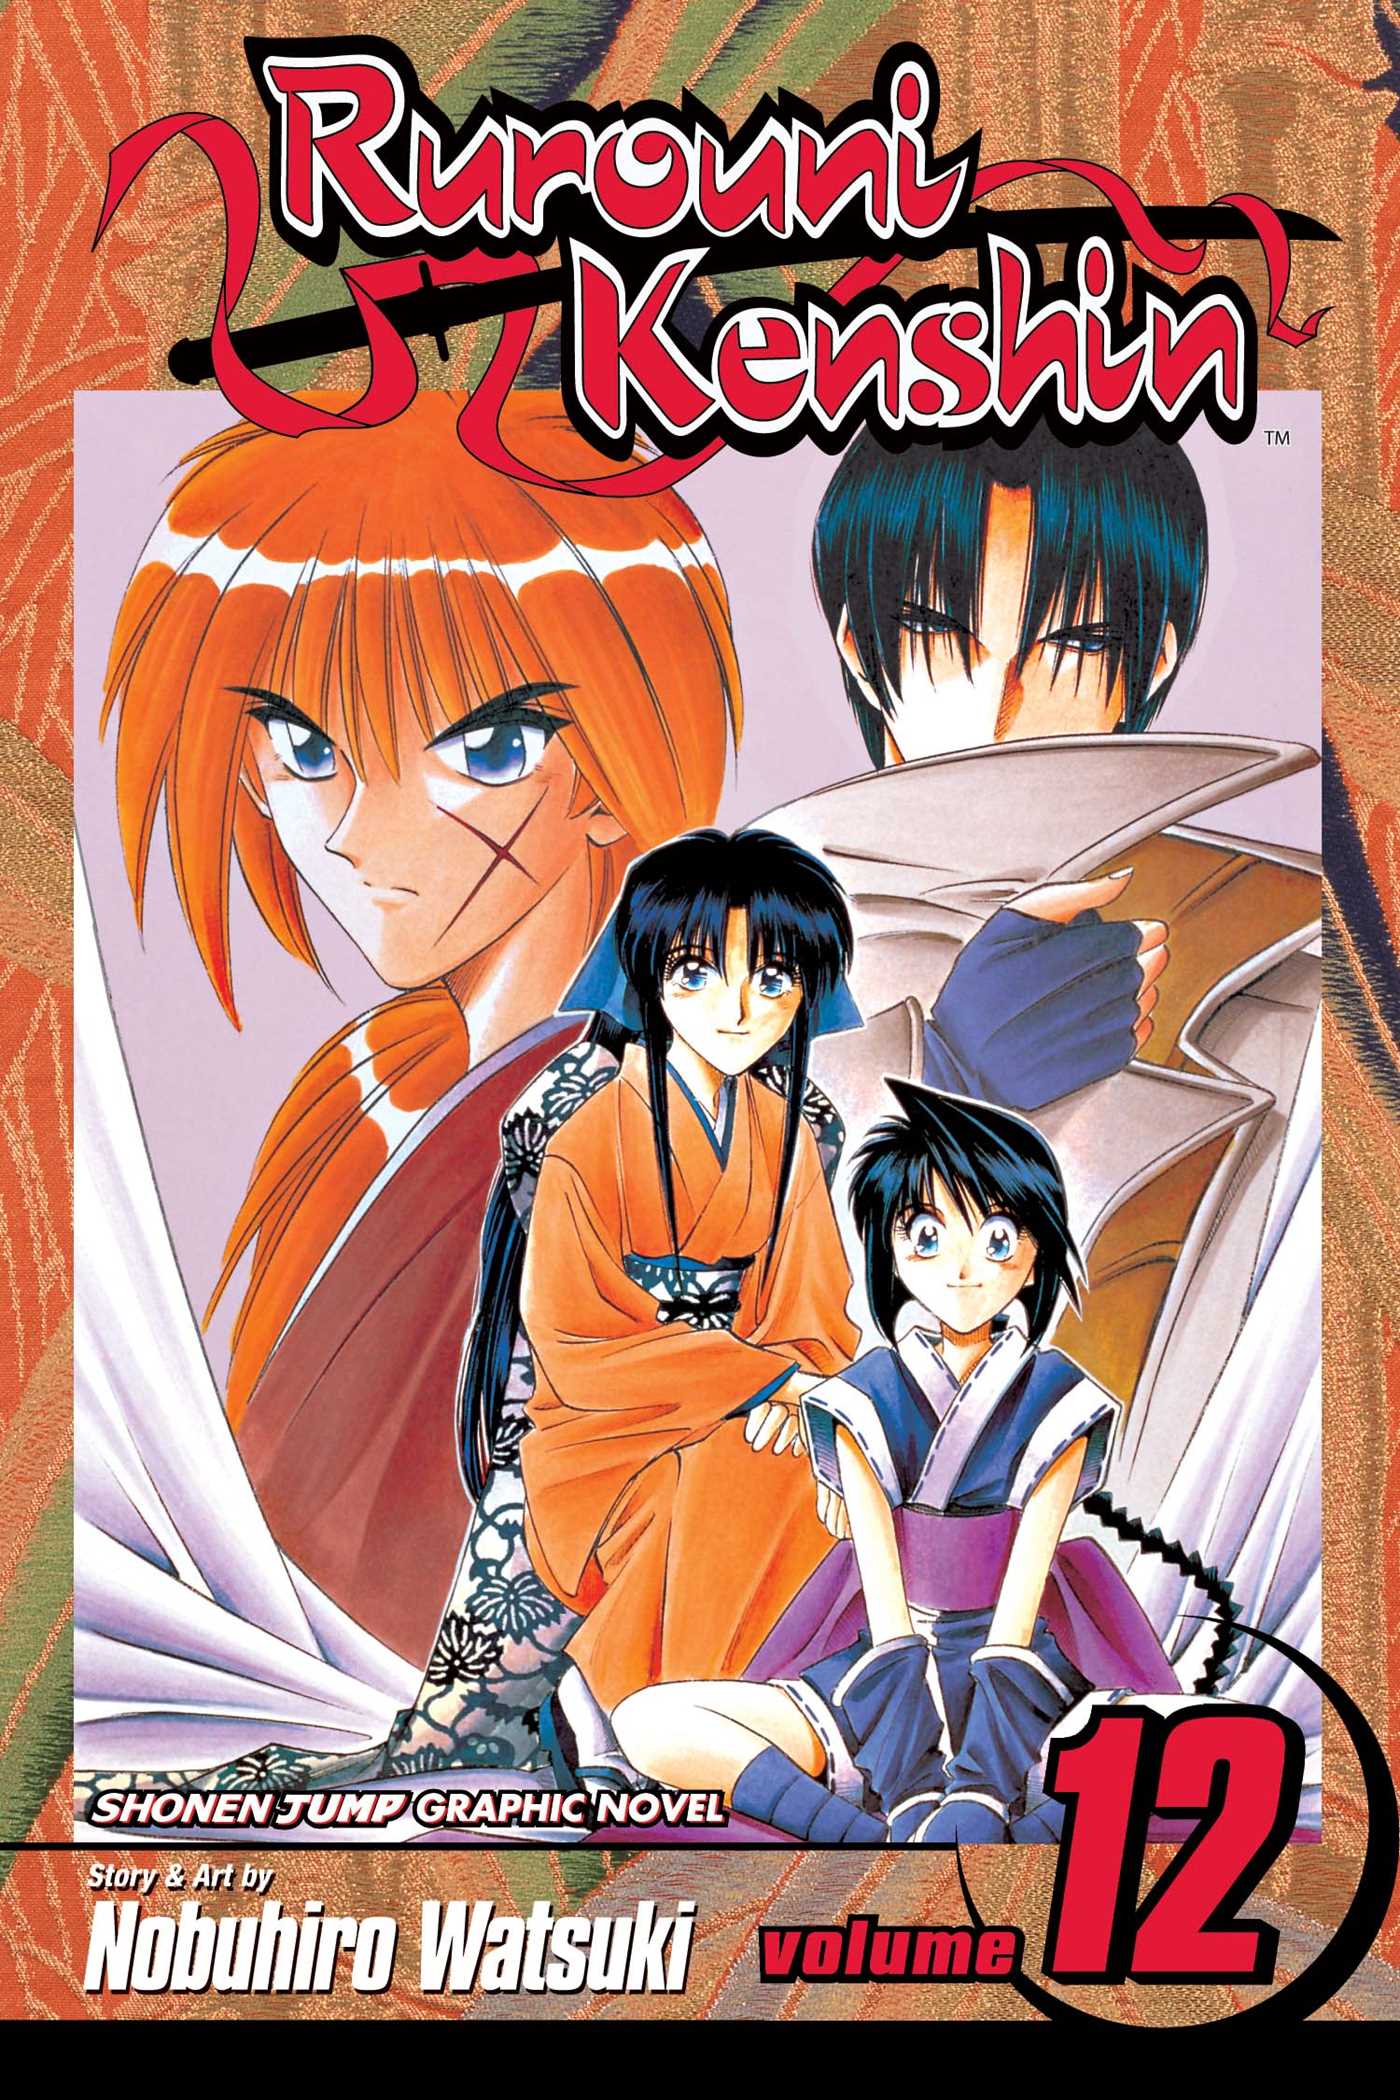 Rurouni Kenshin Volume 12